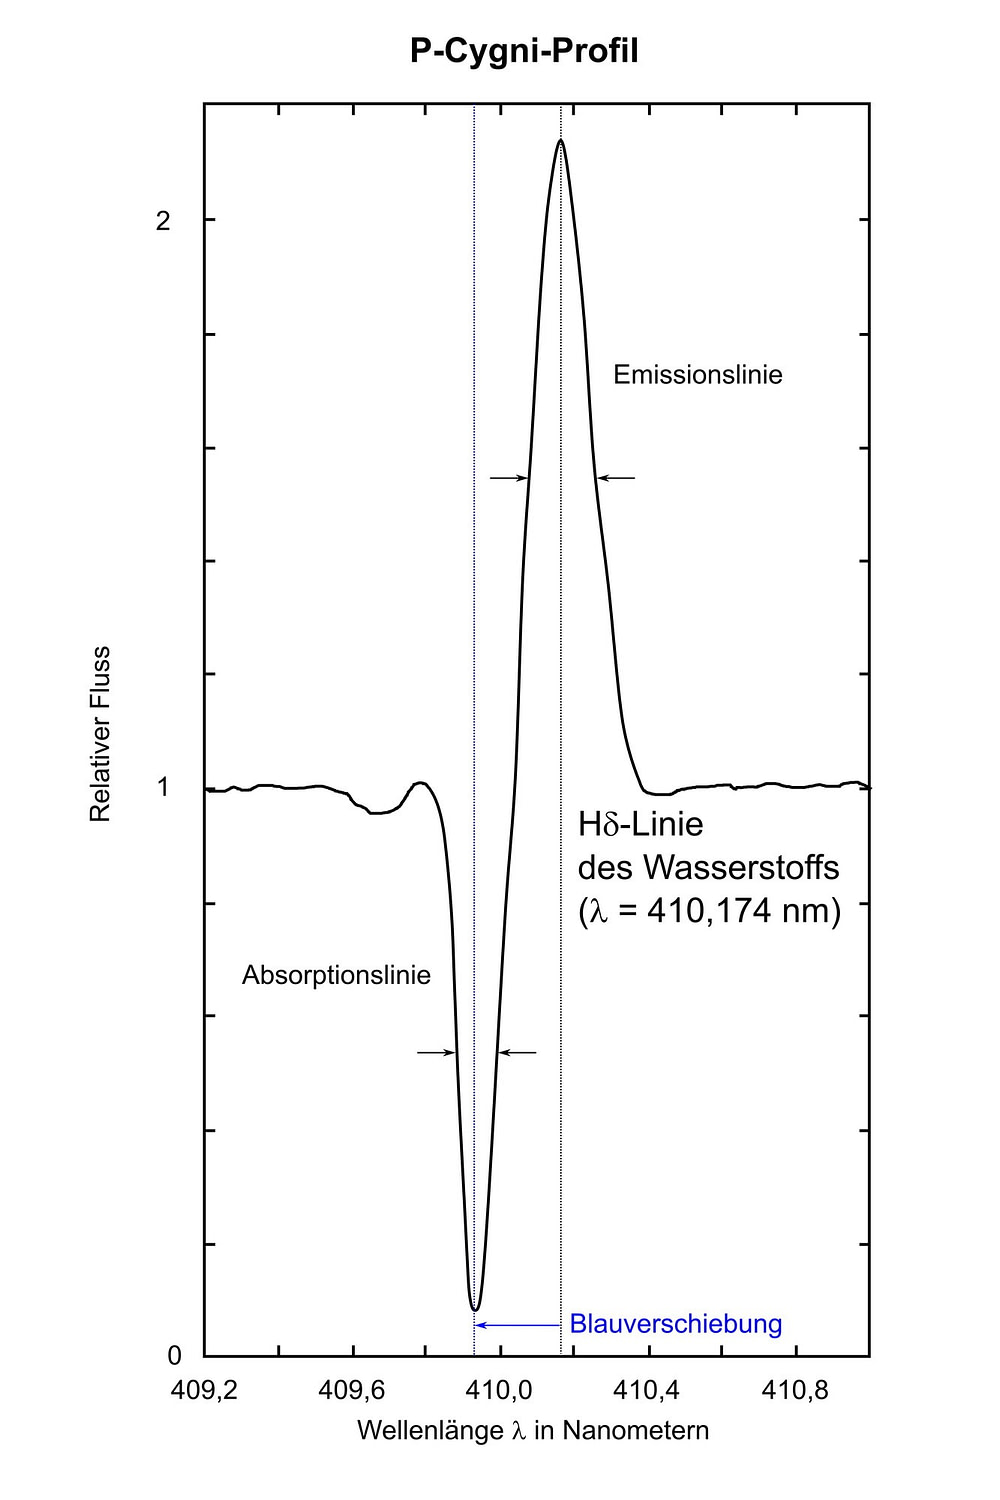 Ein P-Cygni-Profil im Spektrum besteht aus einer unverschobenen breiten Emissionslinie und einer zu kleineren Wellenlängen verschobenen schmaleren Absorptionslinie